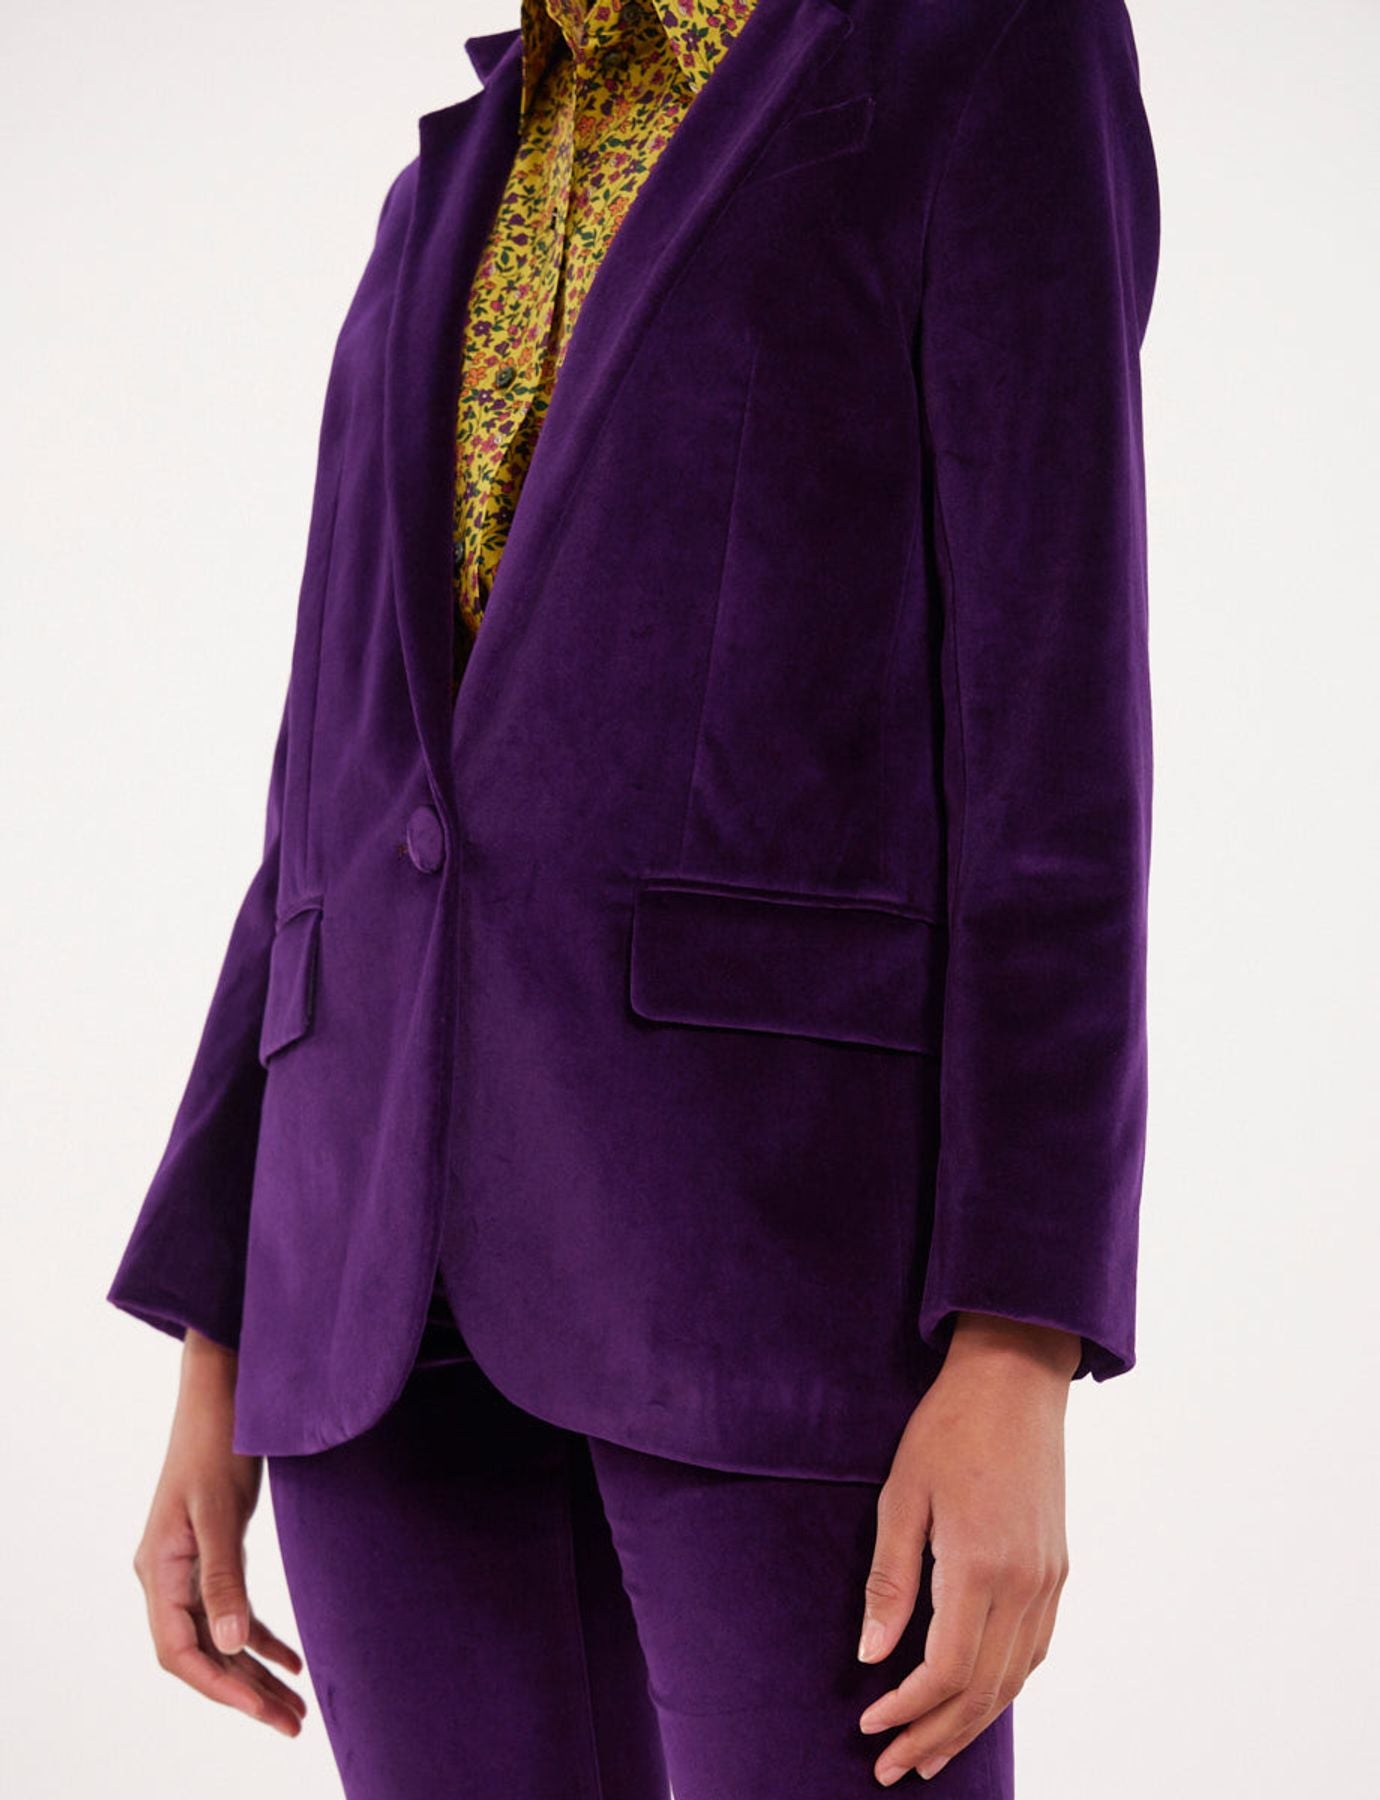 jacket-brown-purple-in-velvet